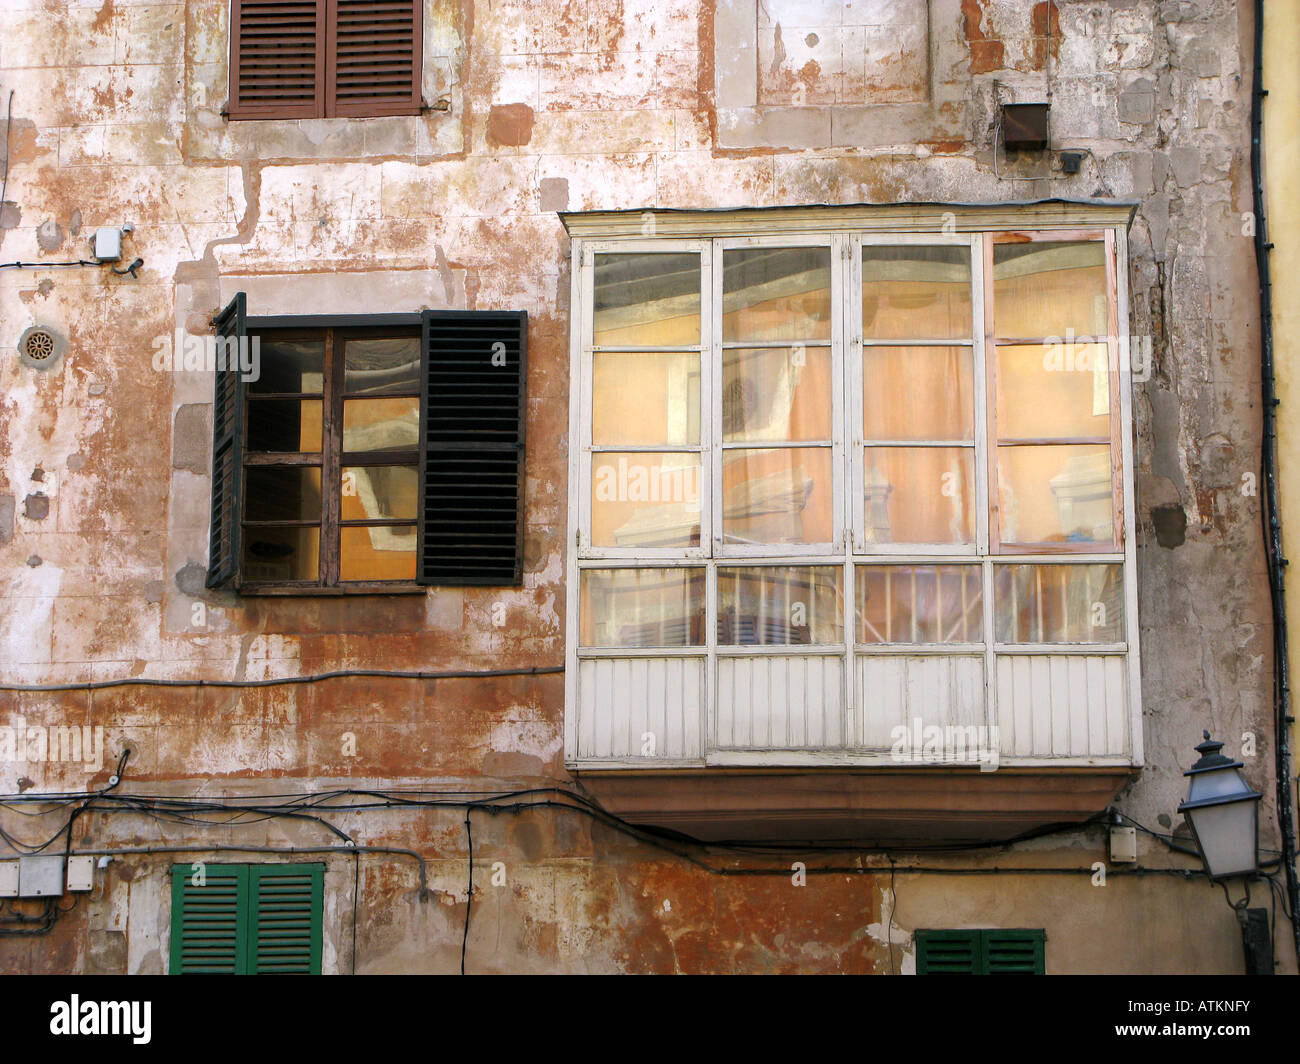 Shambolic old enclosed balcony and windows. Palma. Mallorca, Spain Stock Photo